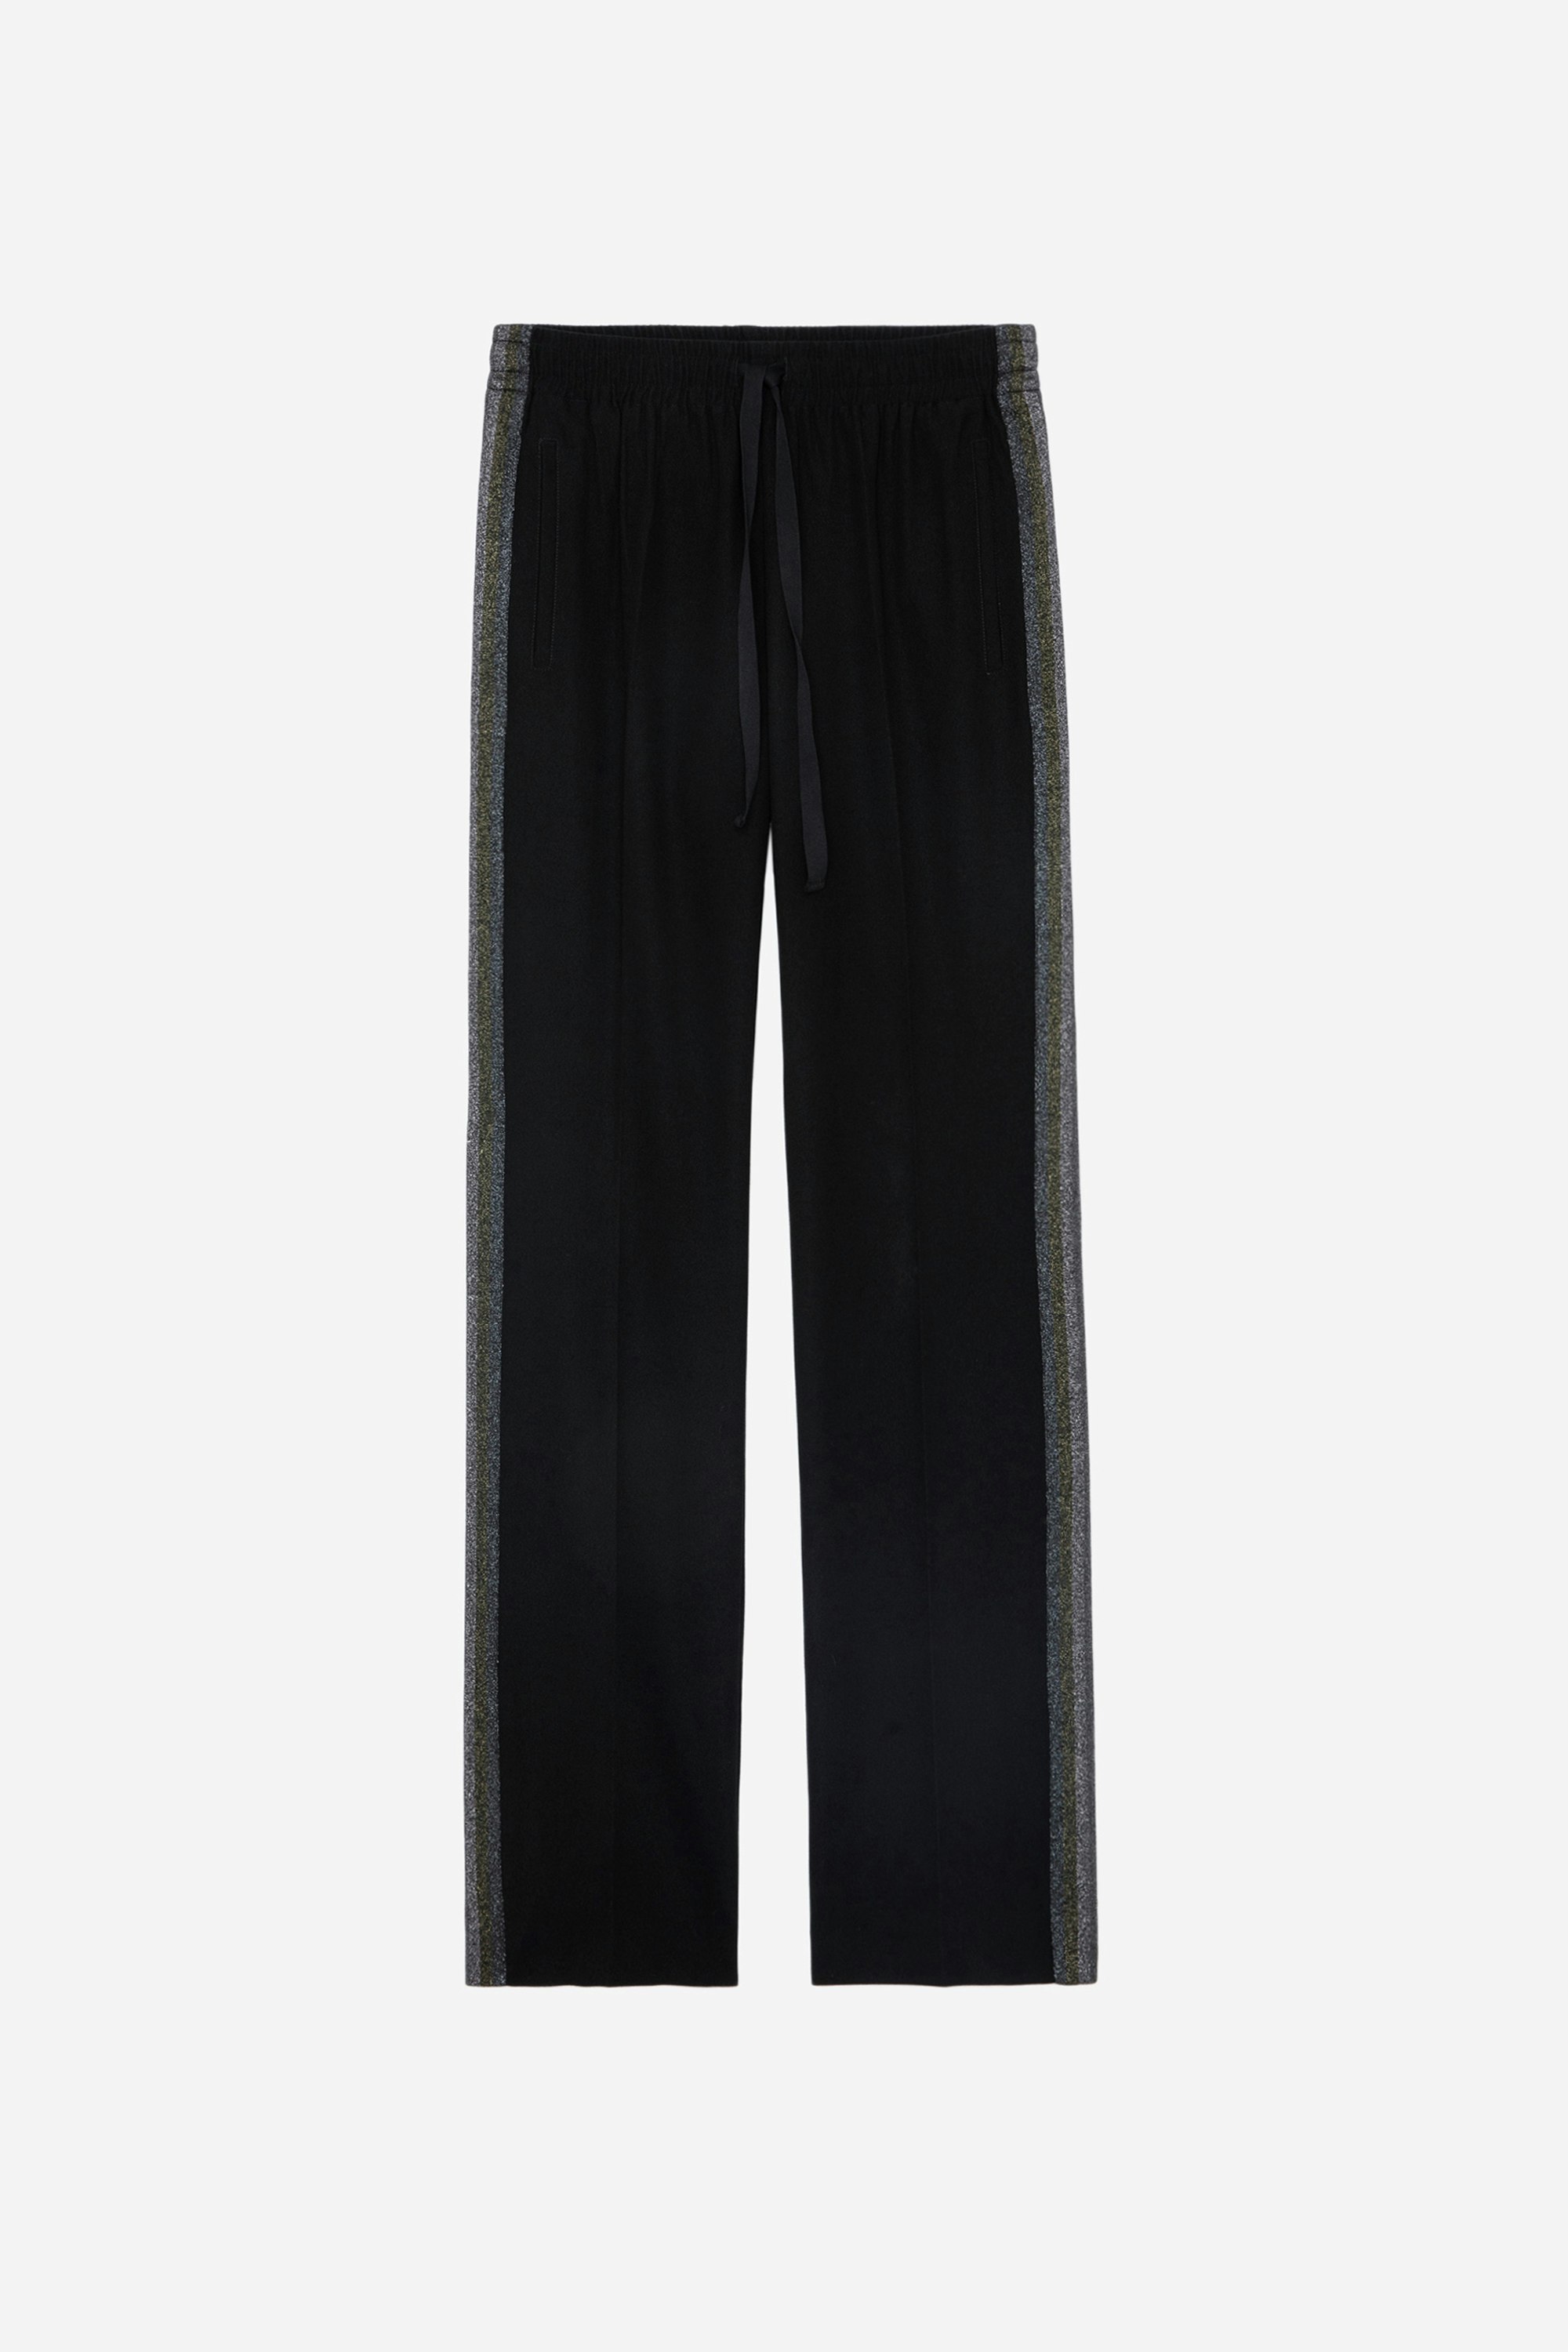 Pantalon Pomy - Pantalon noir à bandes latérales pailletées.